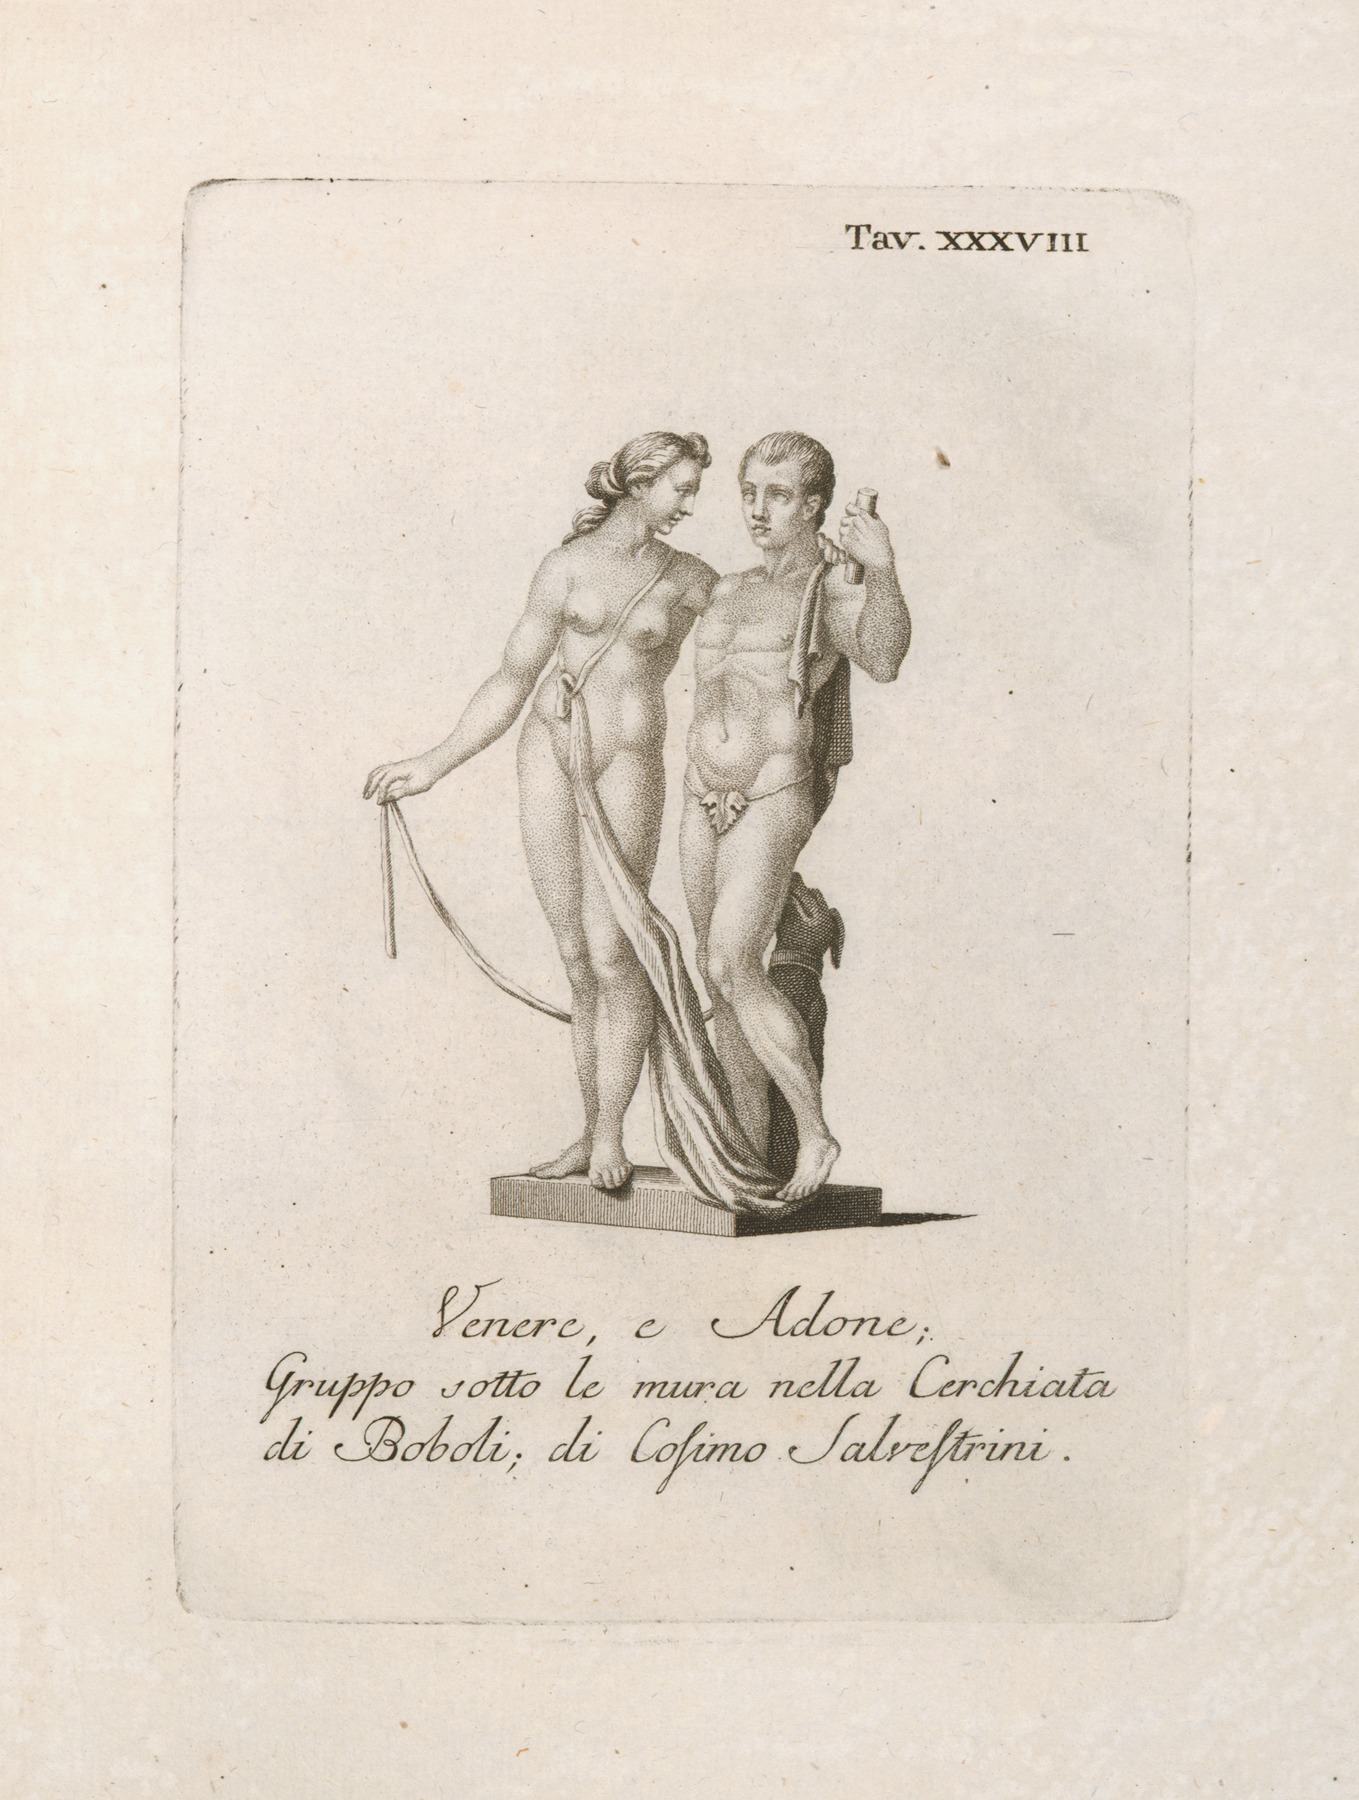 Gaetano Vascellini - Venere, e Adone; Gruppo sotto le mura nella Cerchiata di Boboli; di Cosimo Salvestrini.